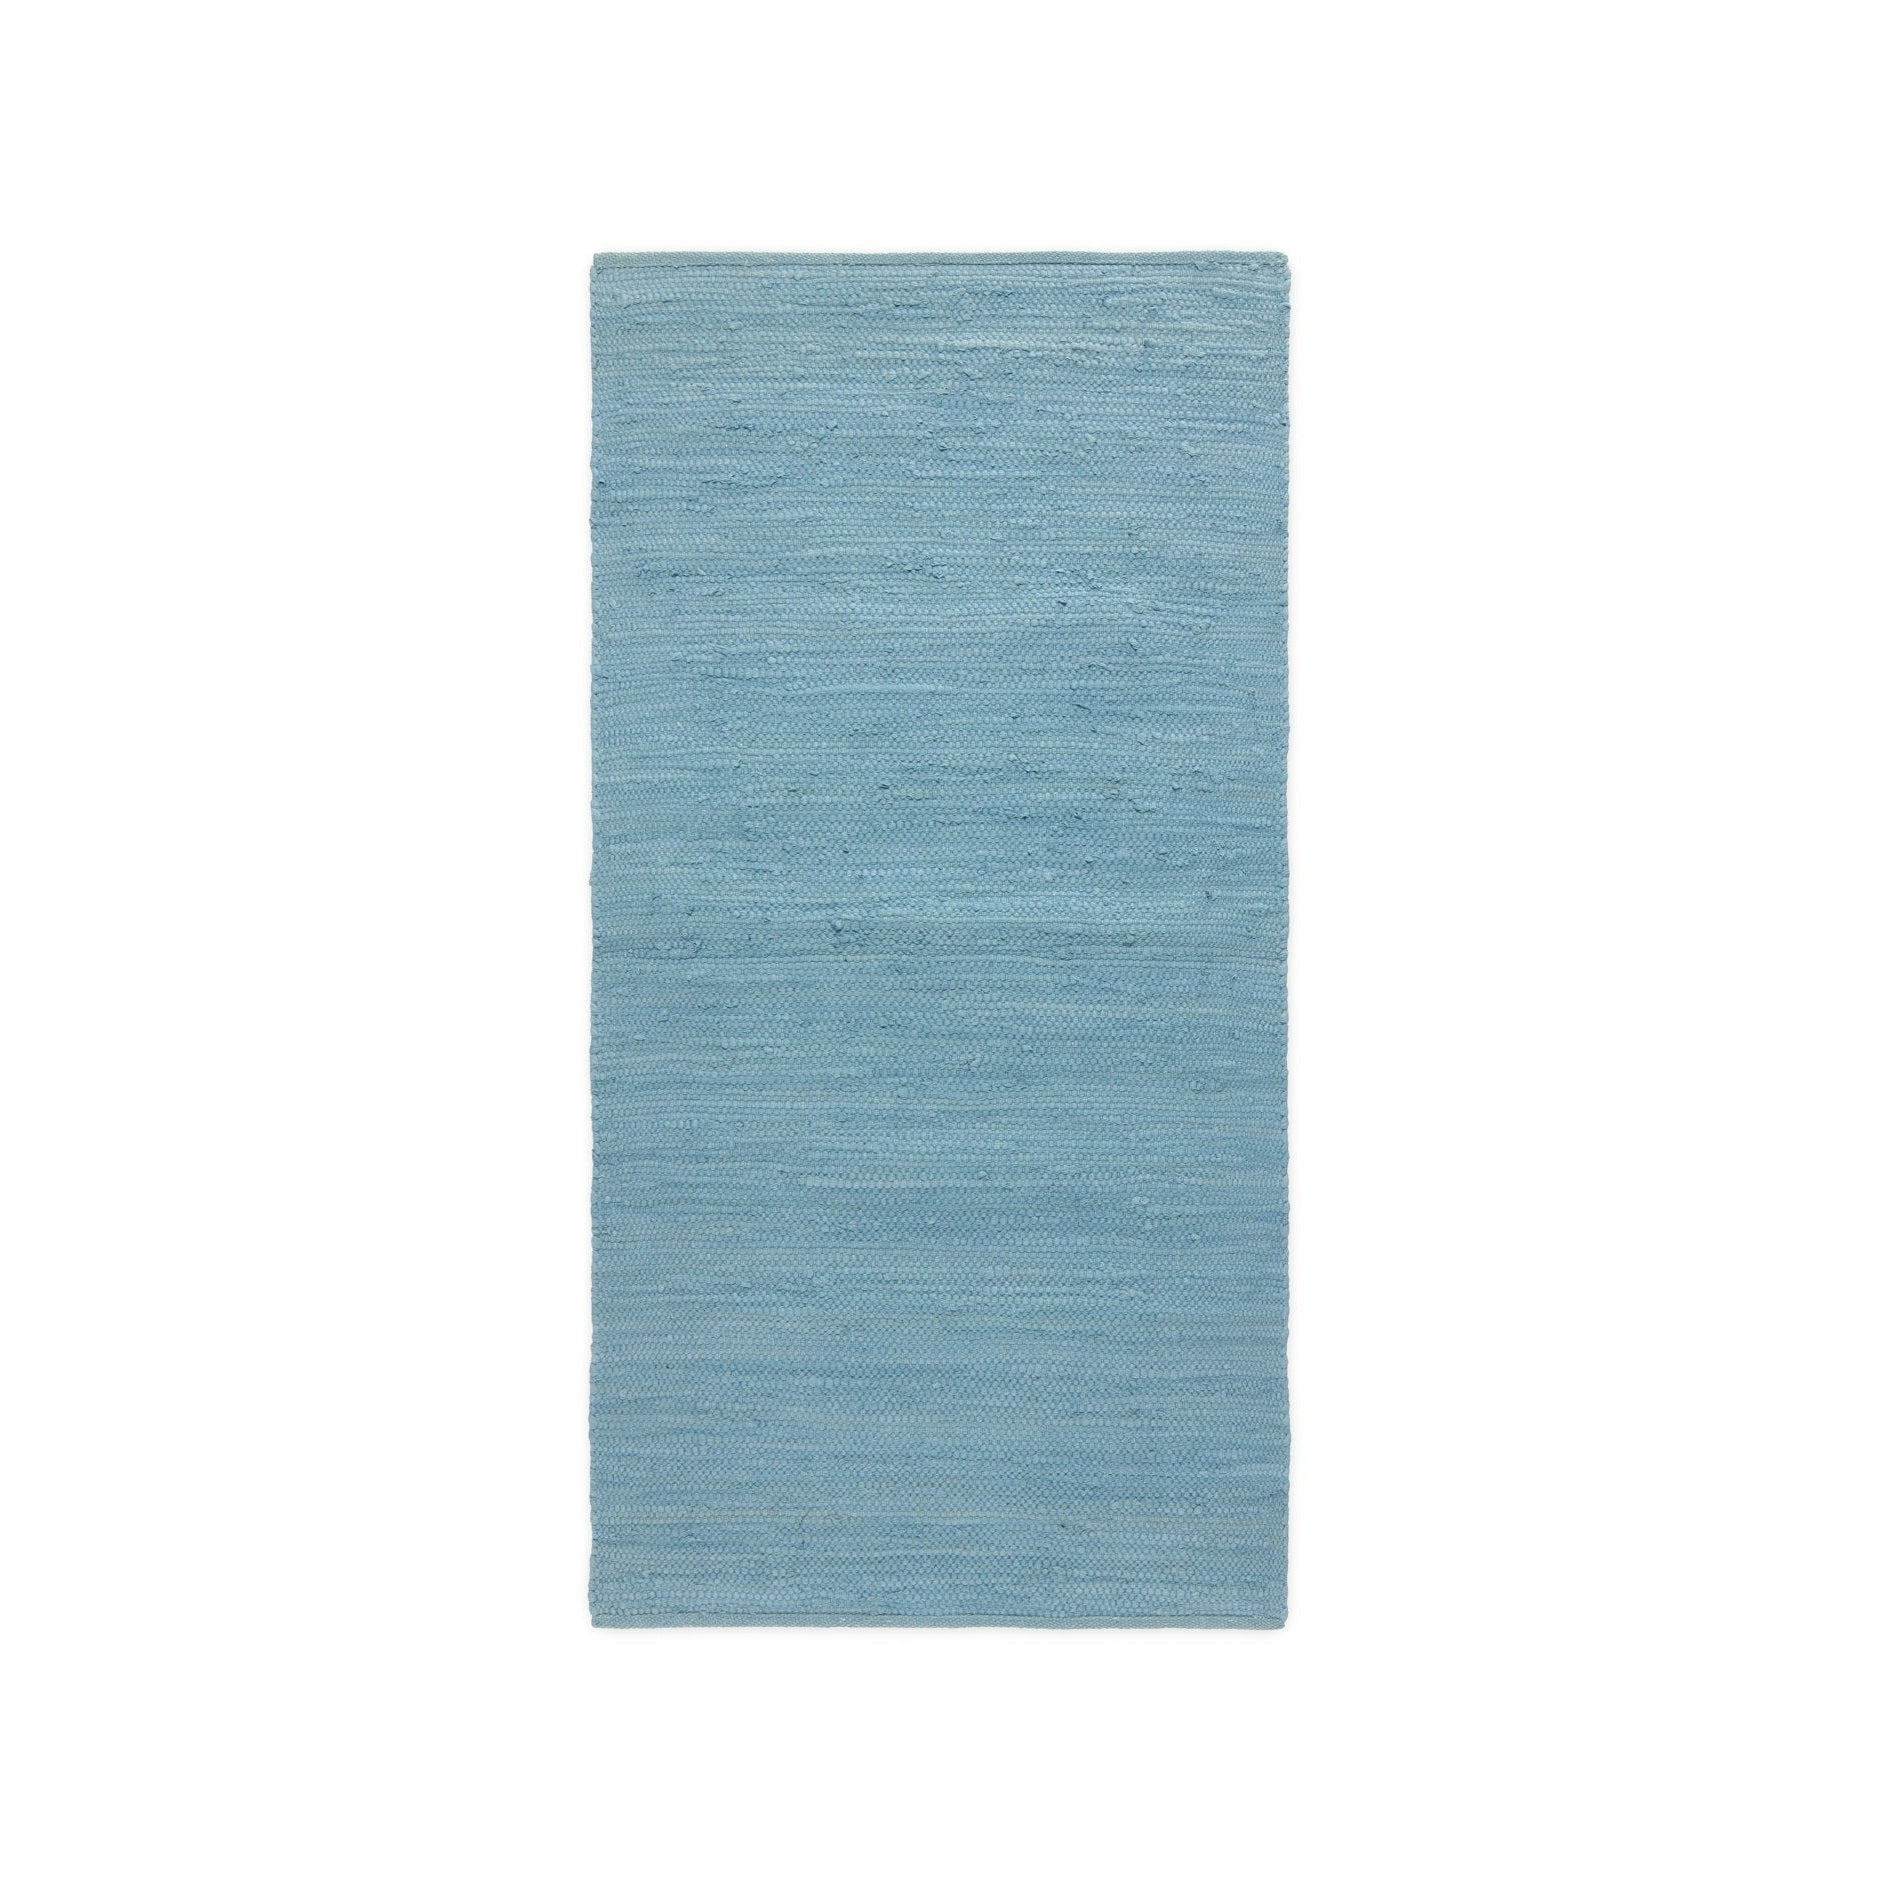 Rug Solid Bomuldstæppe Etertnes Blå, 60 x 90 cm